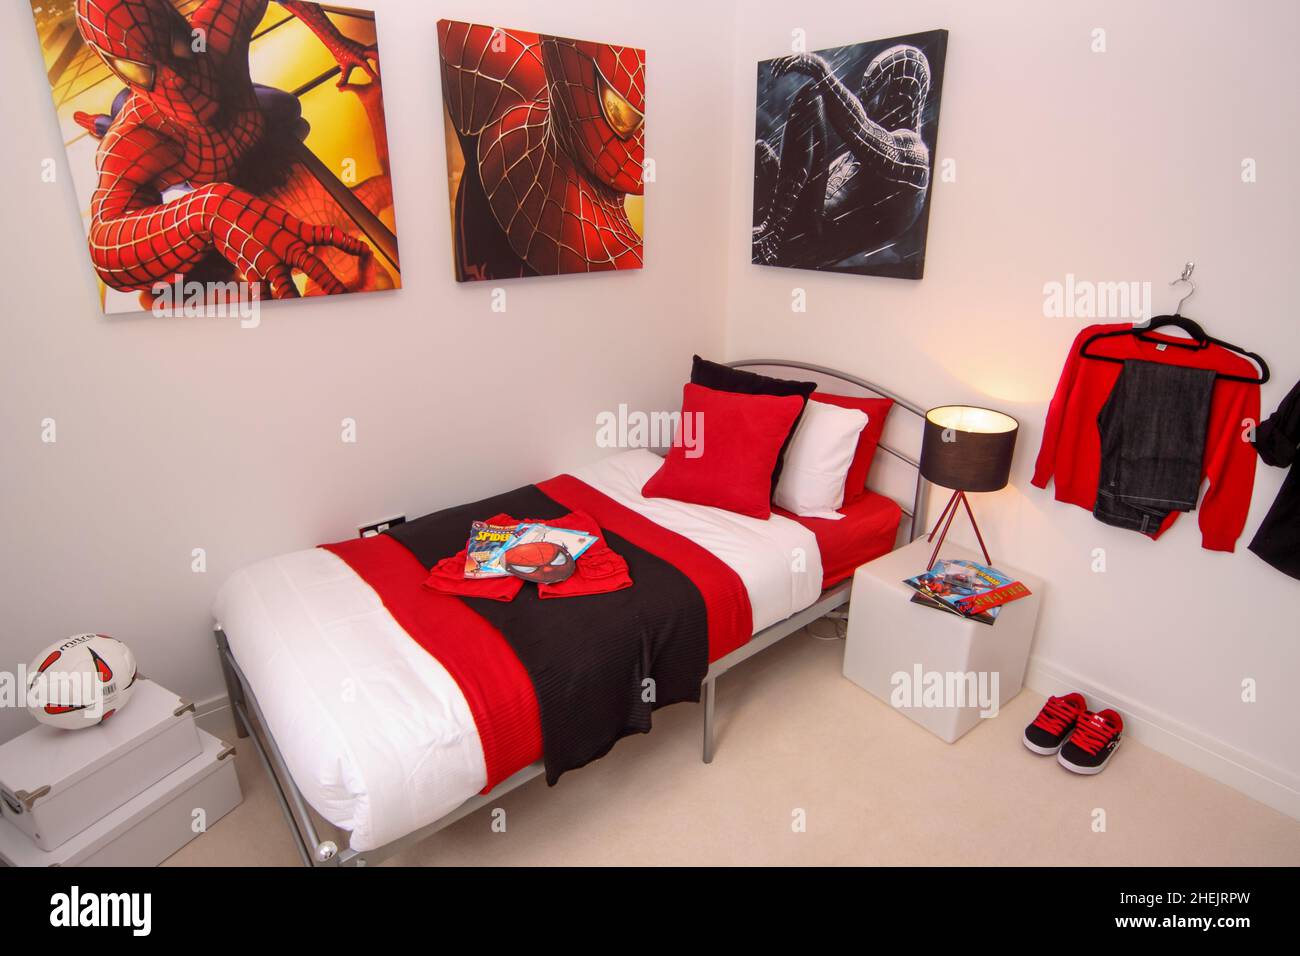 Spider Mann Jungen Kinder Schlafzimmer, rot schwarz und weiß Thema, Bett,  Kissen, Rugby Ball, Nachttischlampe Stockfotografie - Alamy